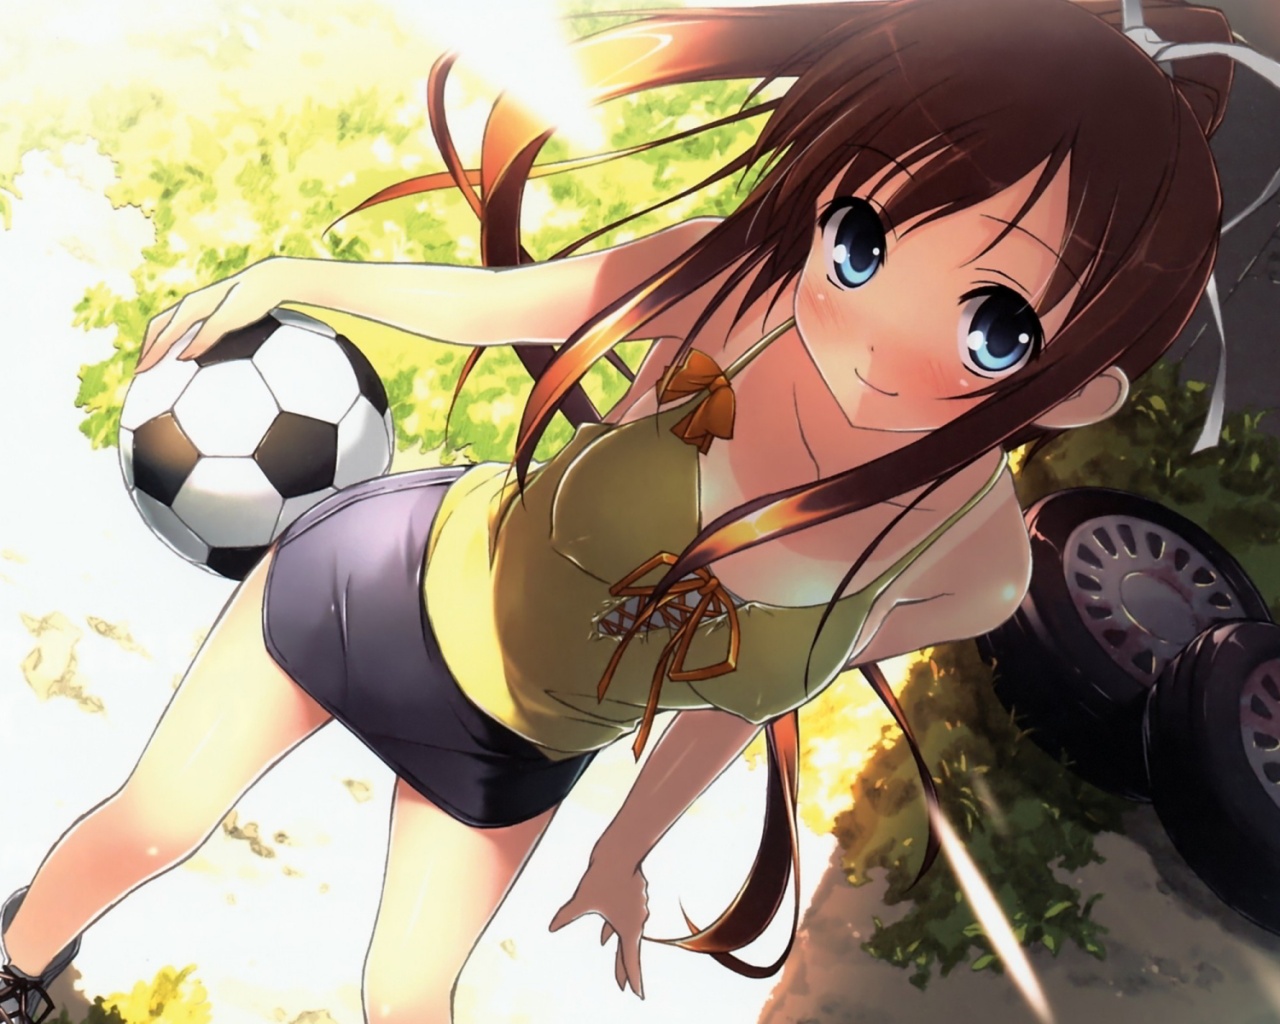 Anime soccer girl Wallpaper in 1280x1024 5:4